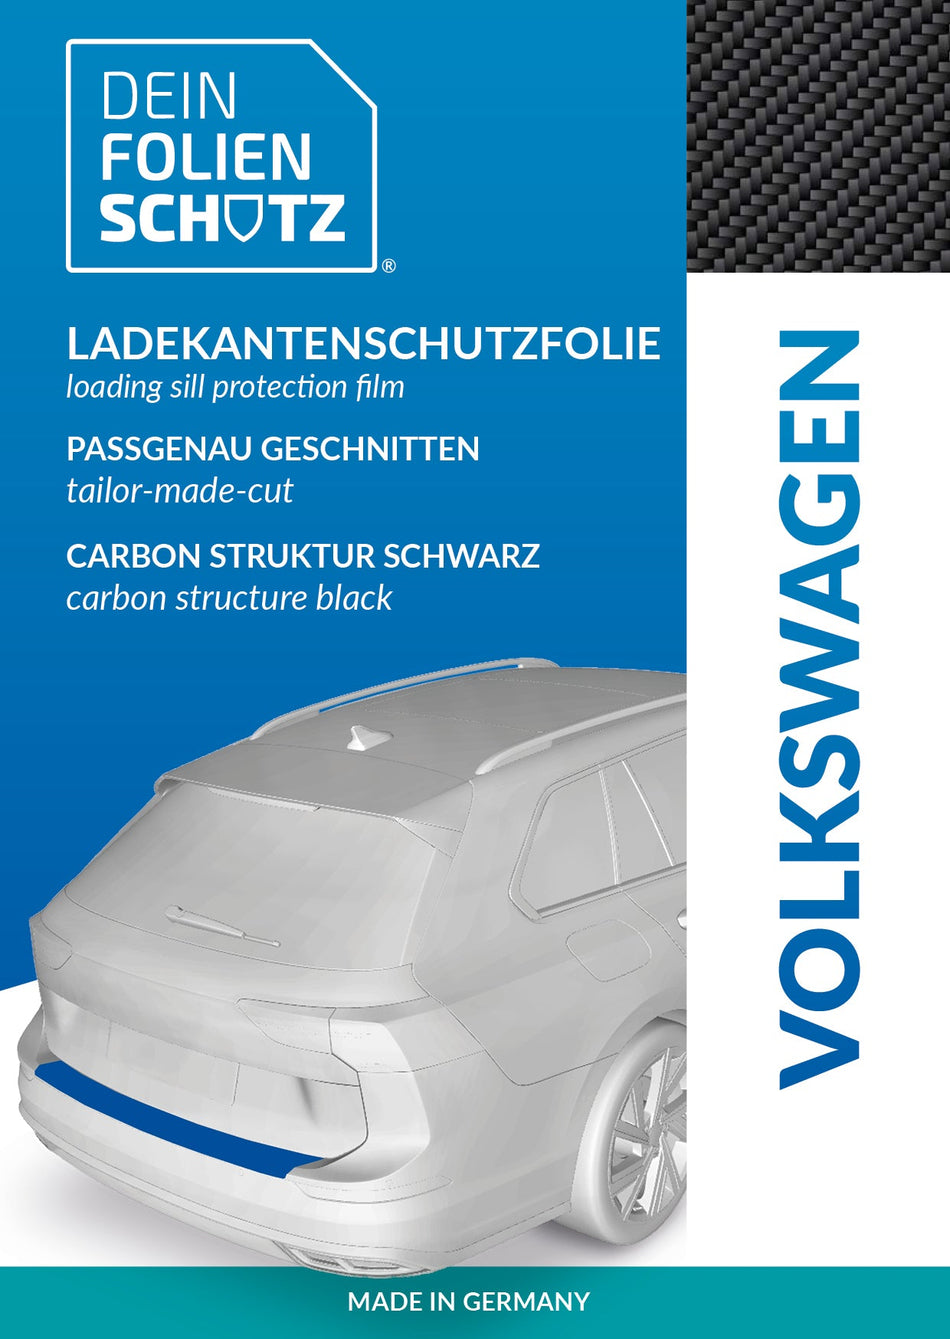 DEIN FOLIENSCHUTZ Ladekantenschutzfolie Volkswagen Passat B7 3C Carbon Struktur schwarz